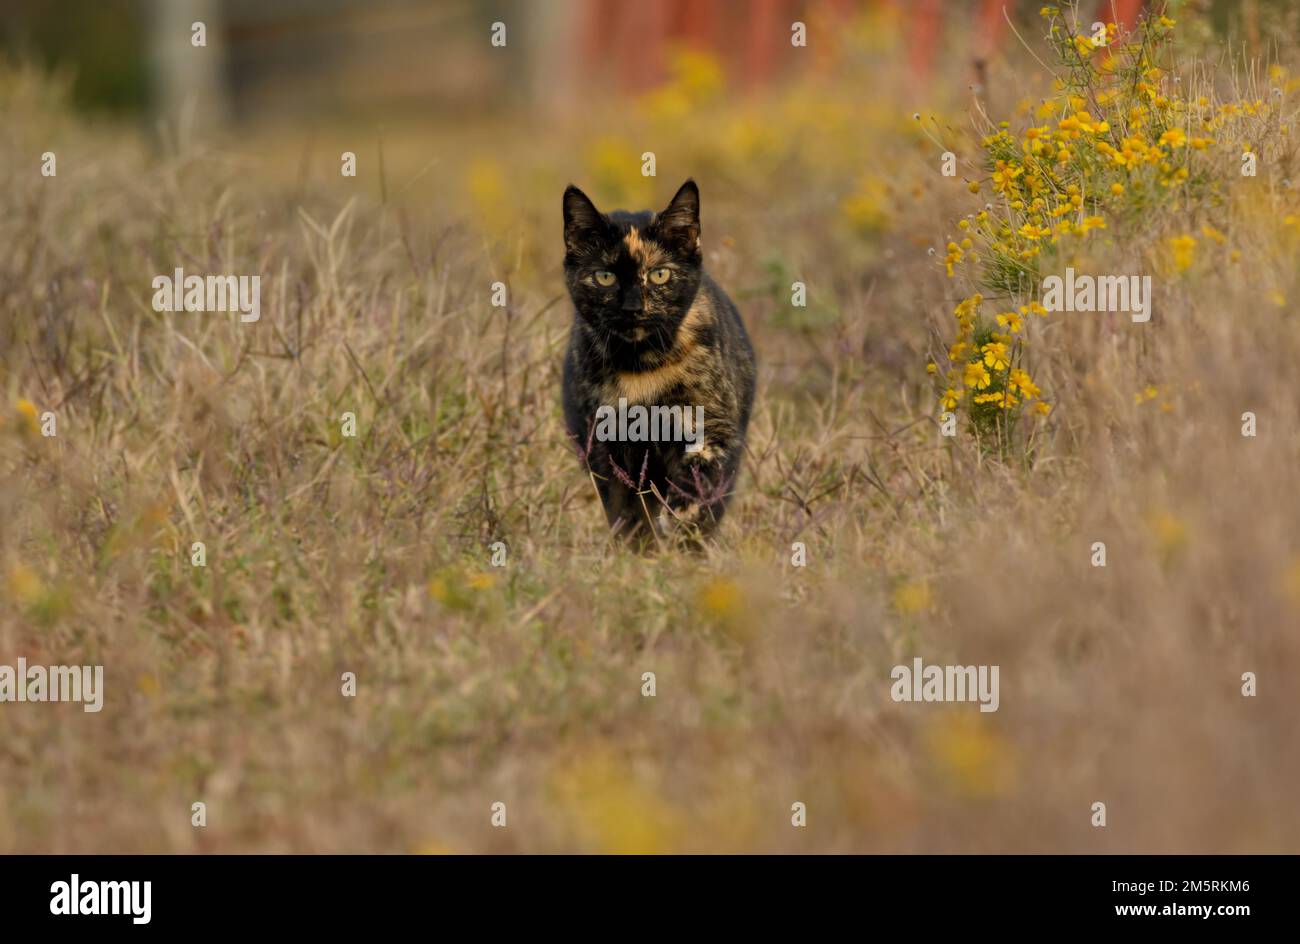 Magnifique chat noir et gingembre marchant vers le spectateur à travers l'herbe d'automne et les fleurs sauvages jaunes Banque D'Images